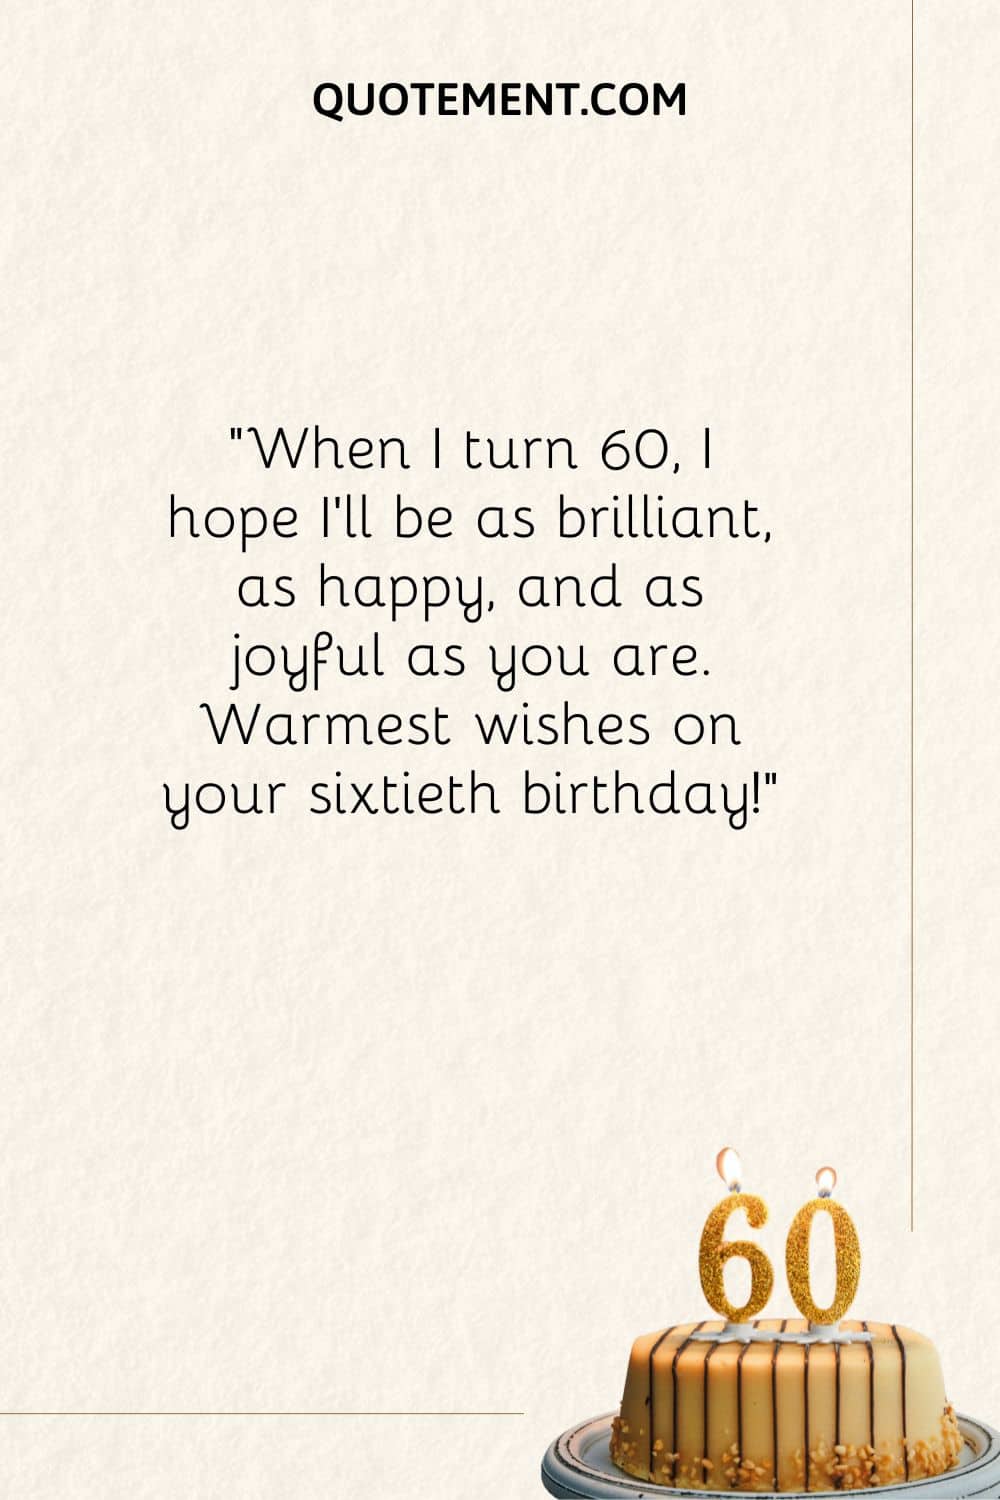 imagen de una tarta de cumpleaños que representa el mejor deseo de feliz 60 cumpleaños